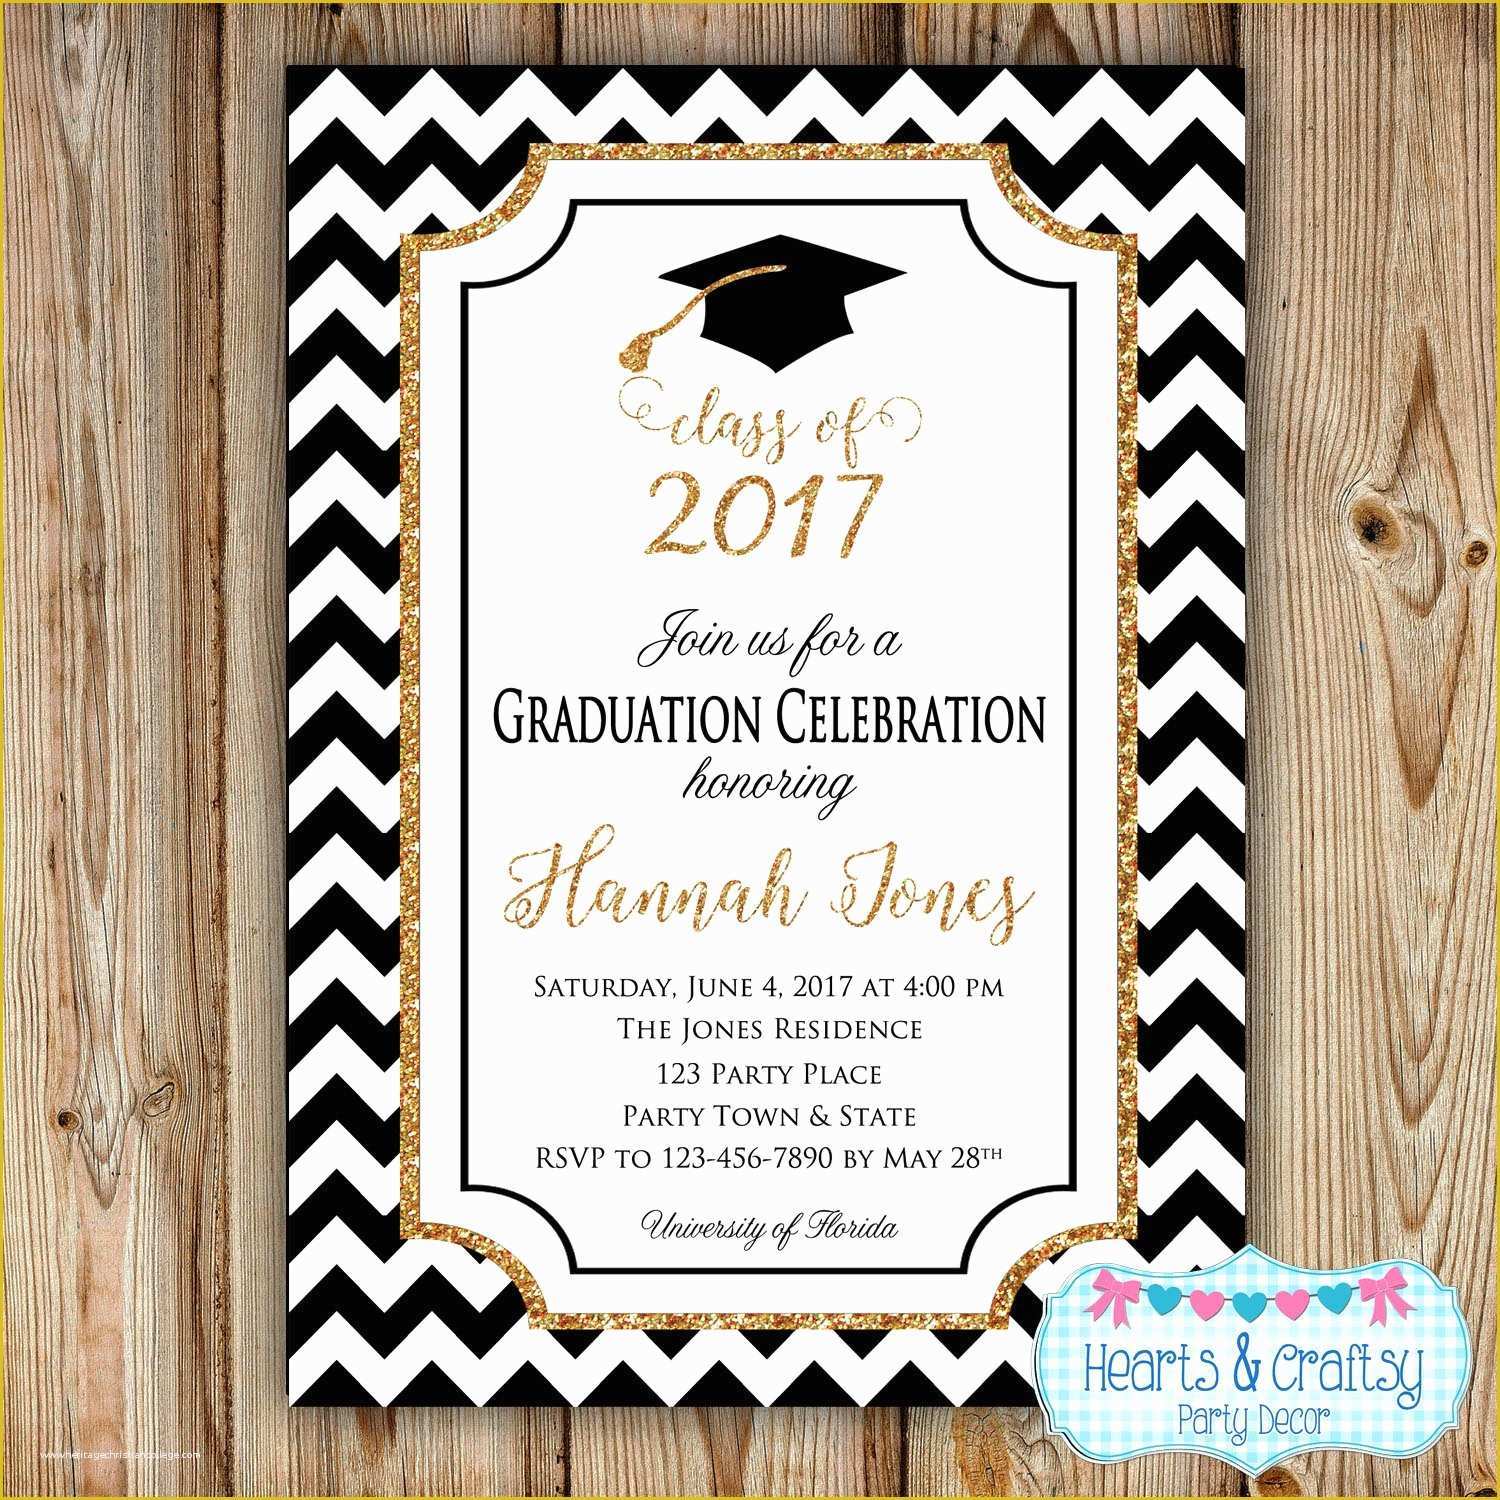 College Graduation Party Invitations Templates Free Of Graduation Party Invitation College Graduation Invitation